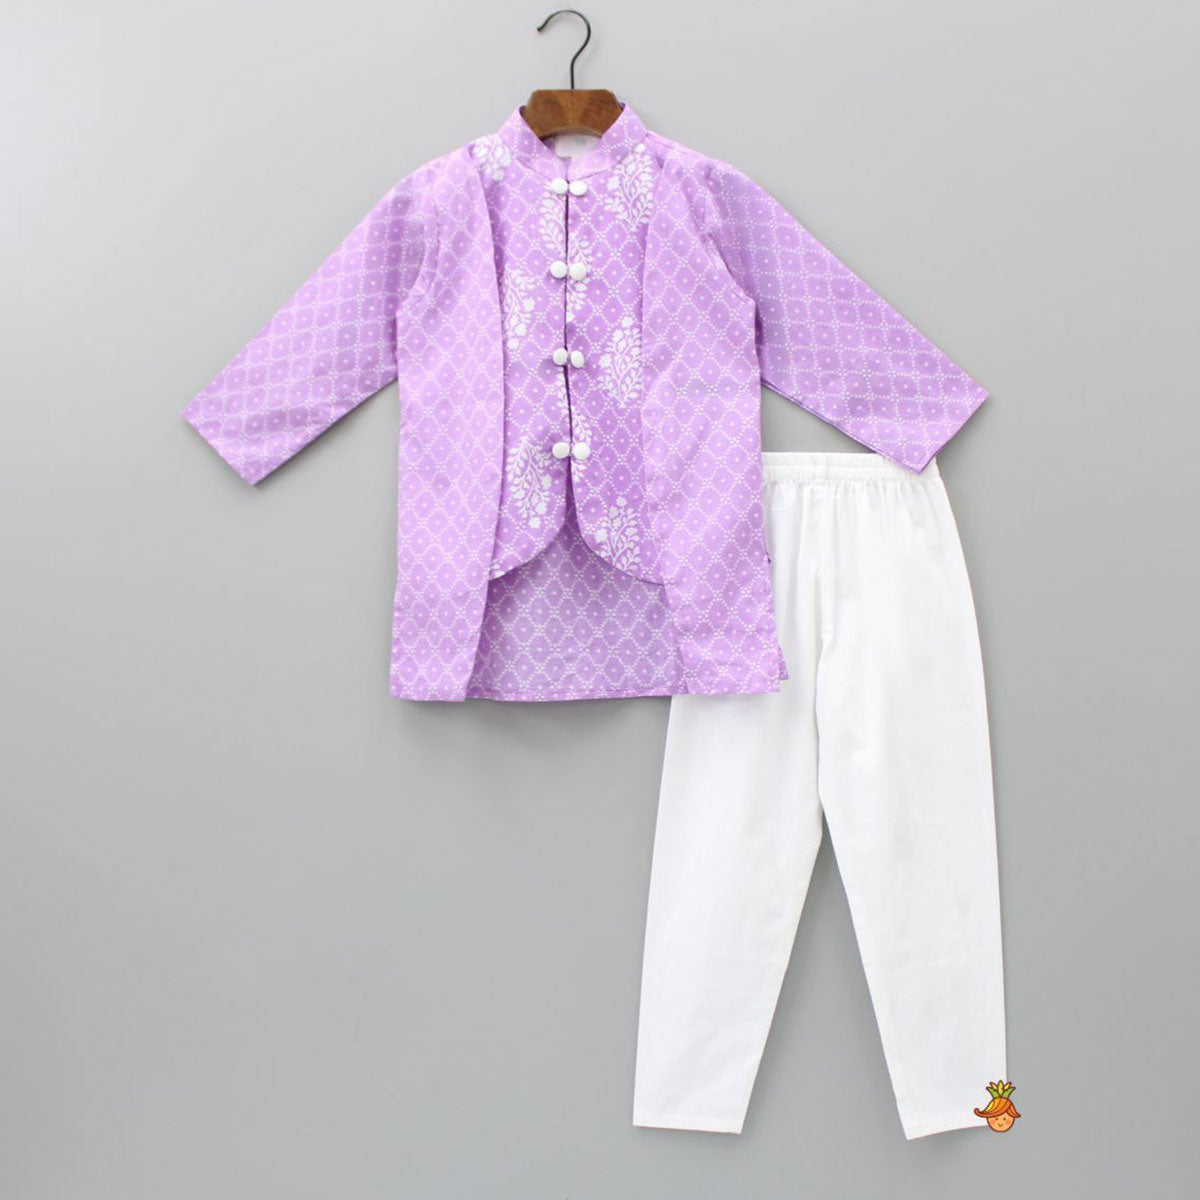 Purple Bandhani Printed Attached Jacket Style Kurta And Churidar